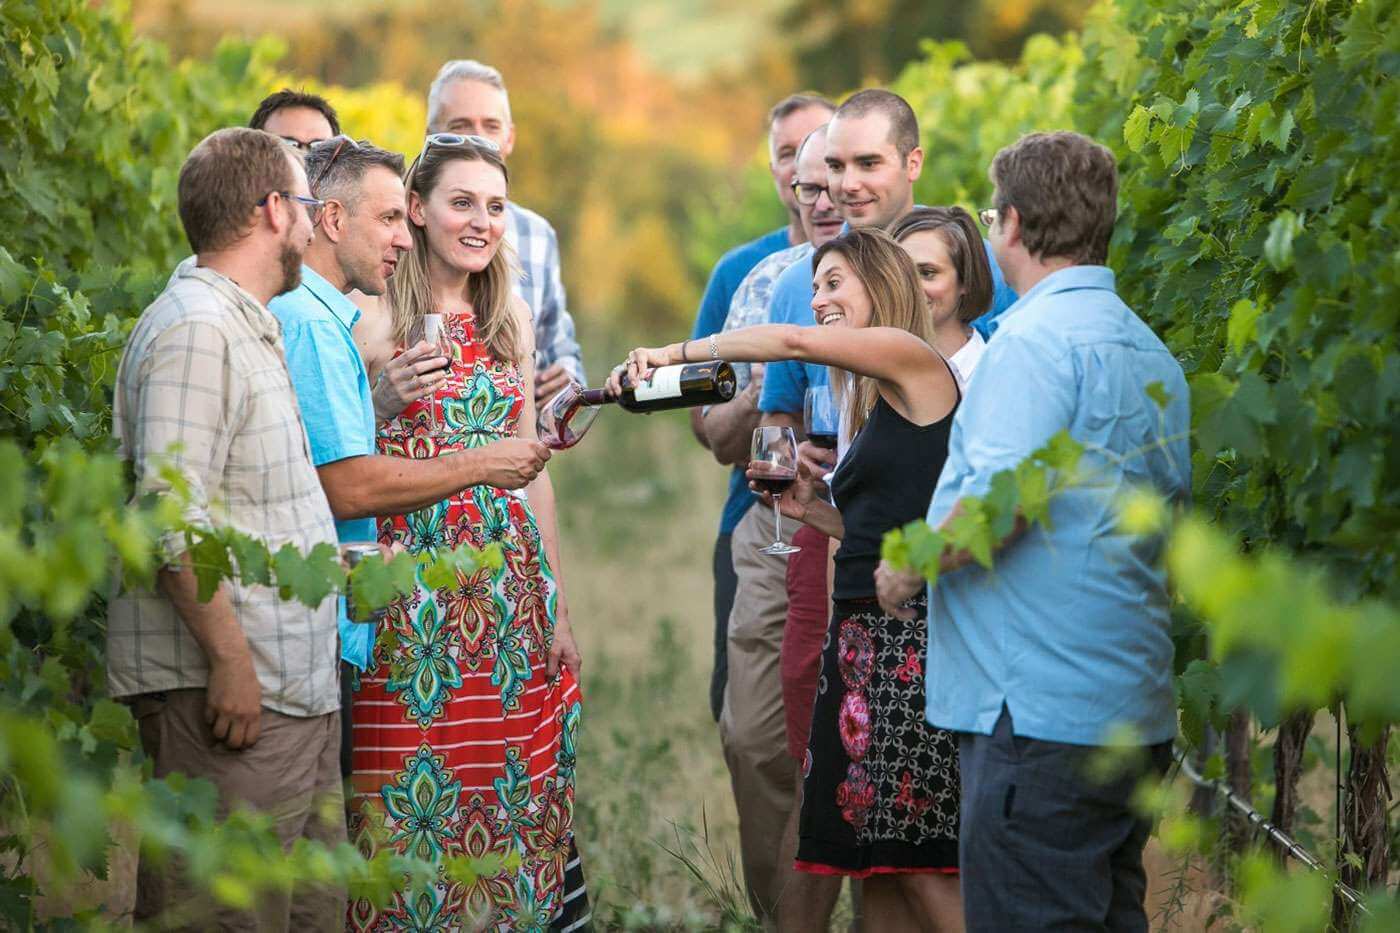 A group of men and women enjoy wine in a vineyard in Walla Walla